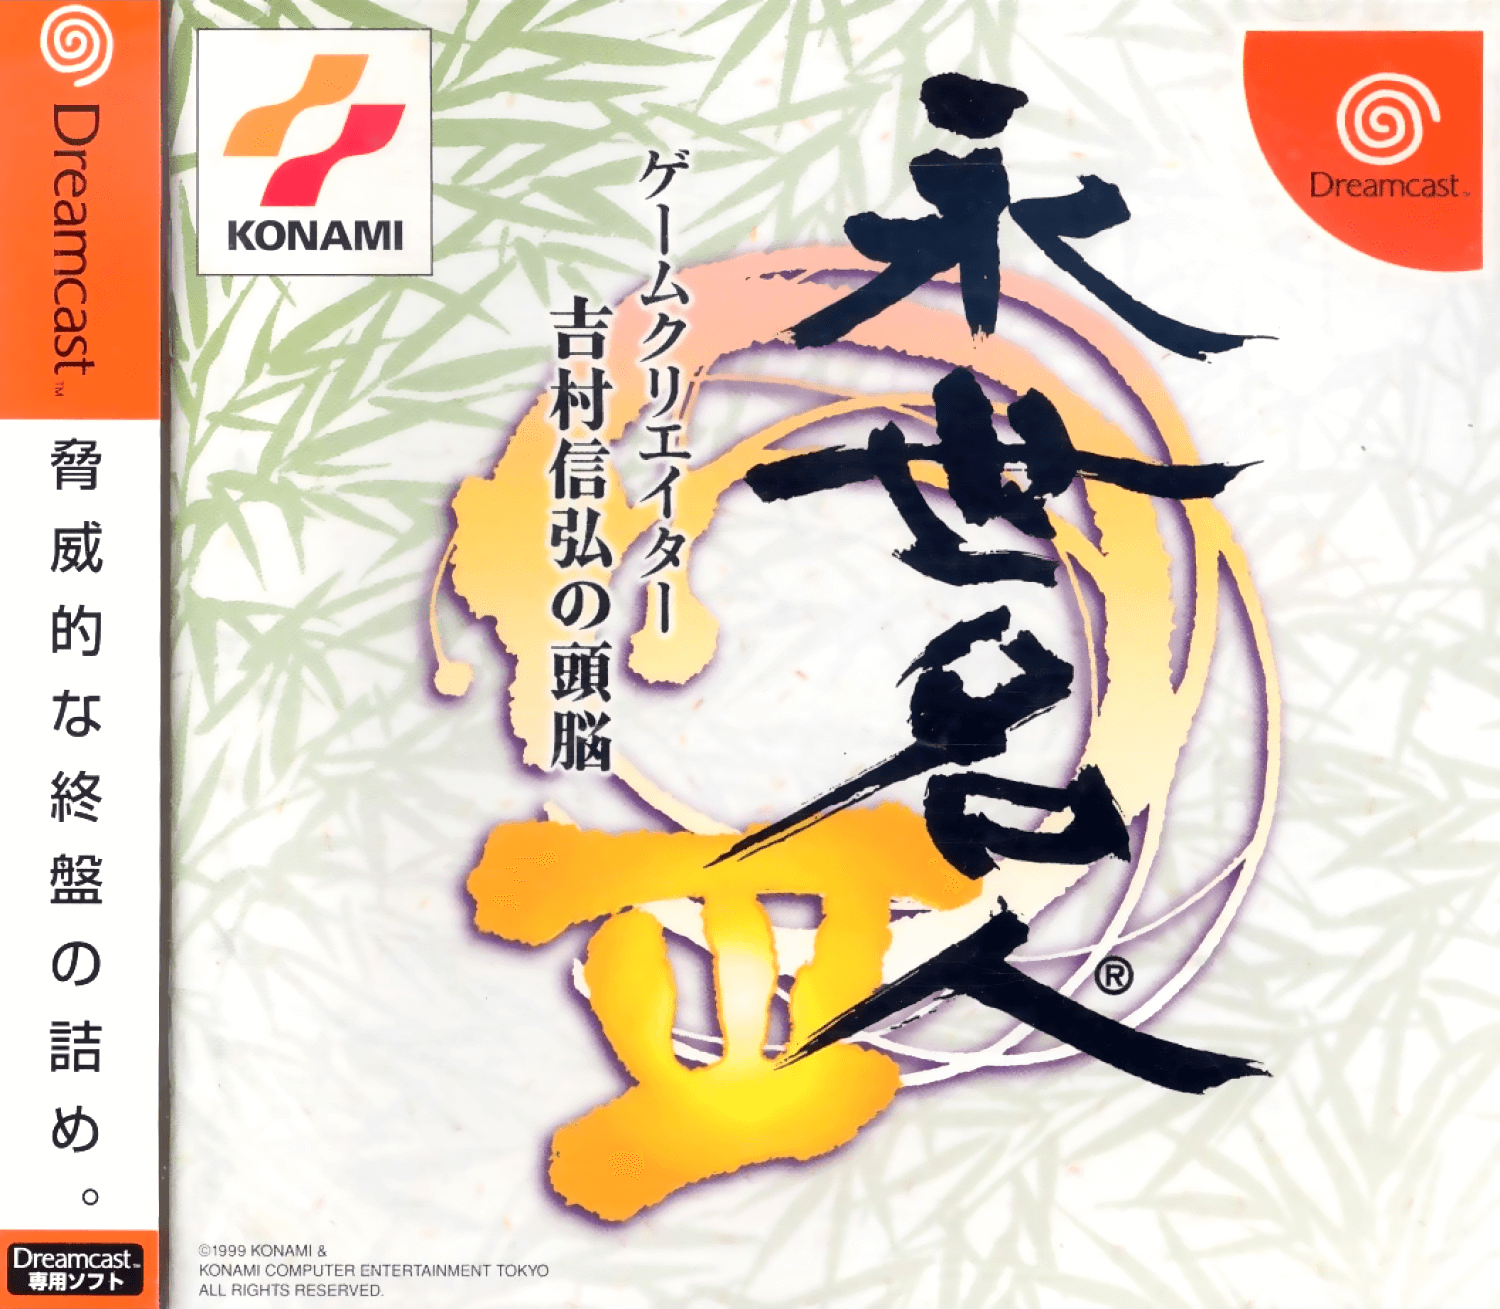 Eisei Meijin III: Game Creator Yoshimura Nobuhiro no Zunou